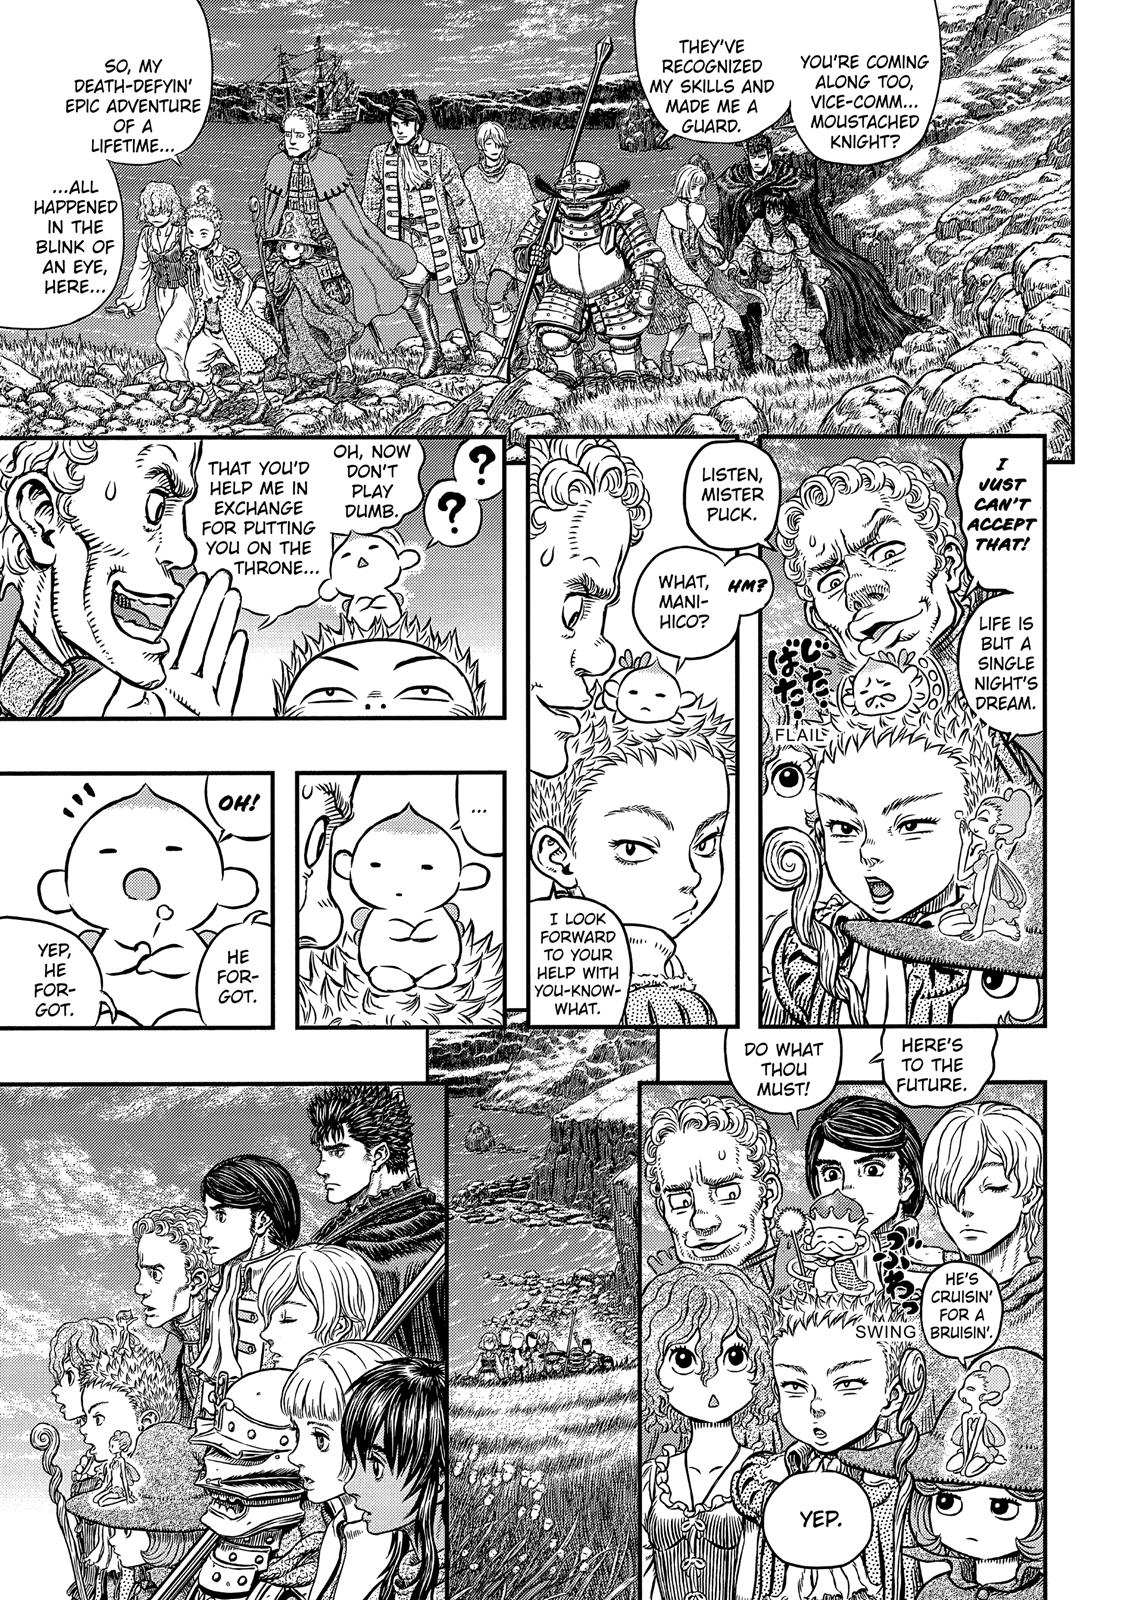 Berserk Manga Chapter 342 image 11